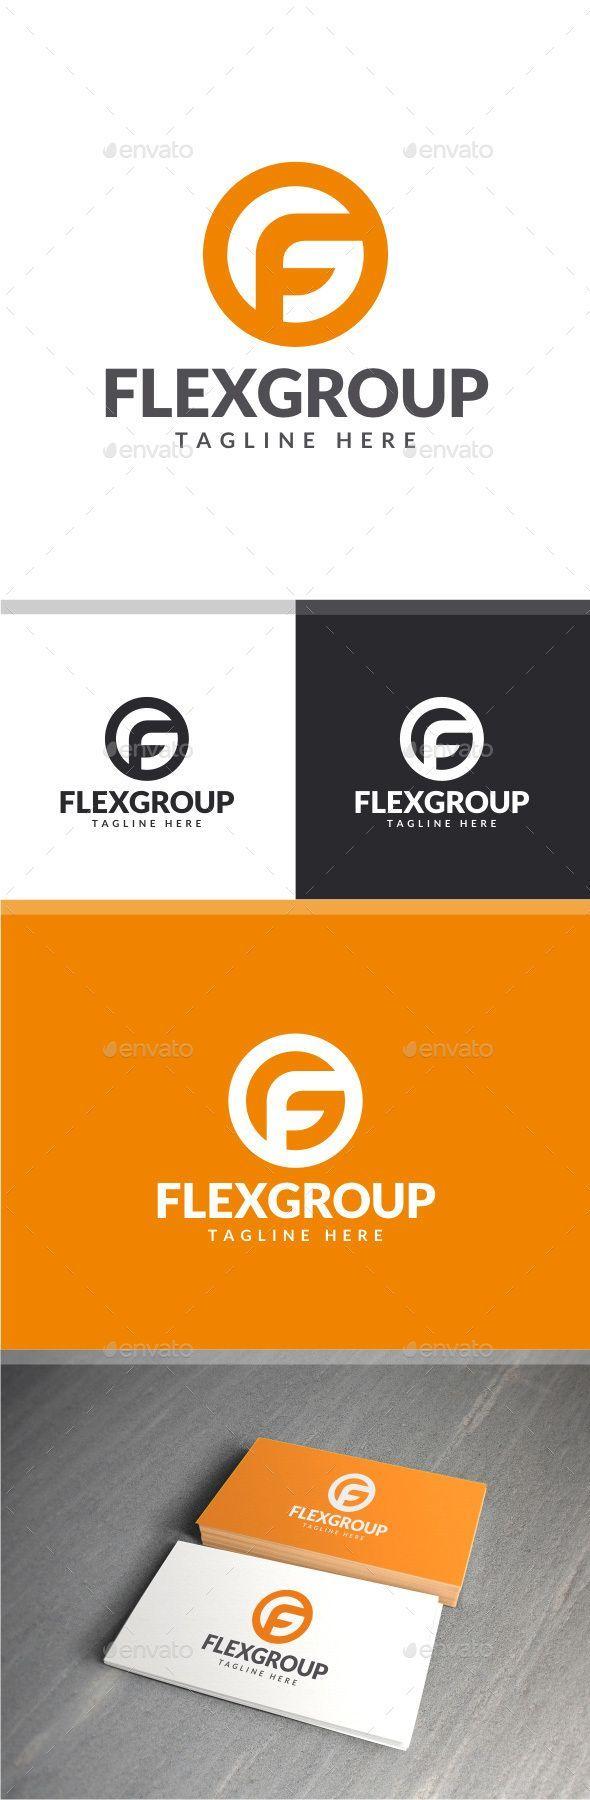 F in White Orange Circle Logo - Pin by Oldwhite Wang on Logo | Pinterest | Logos, Logo design and ...